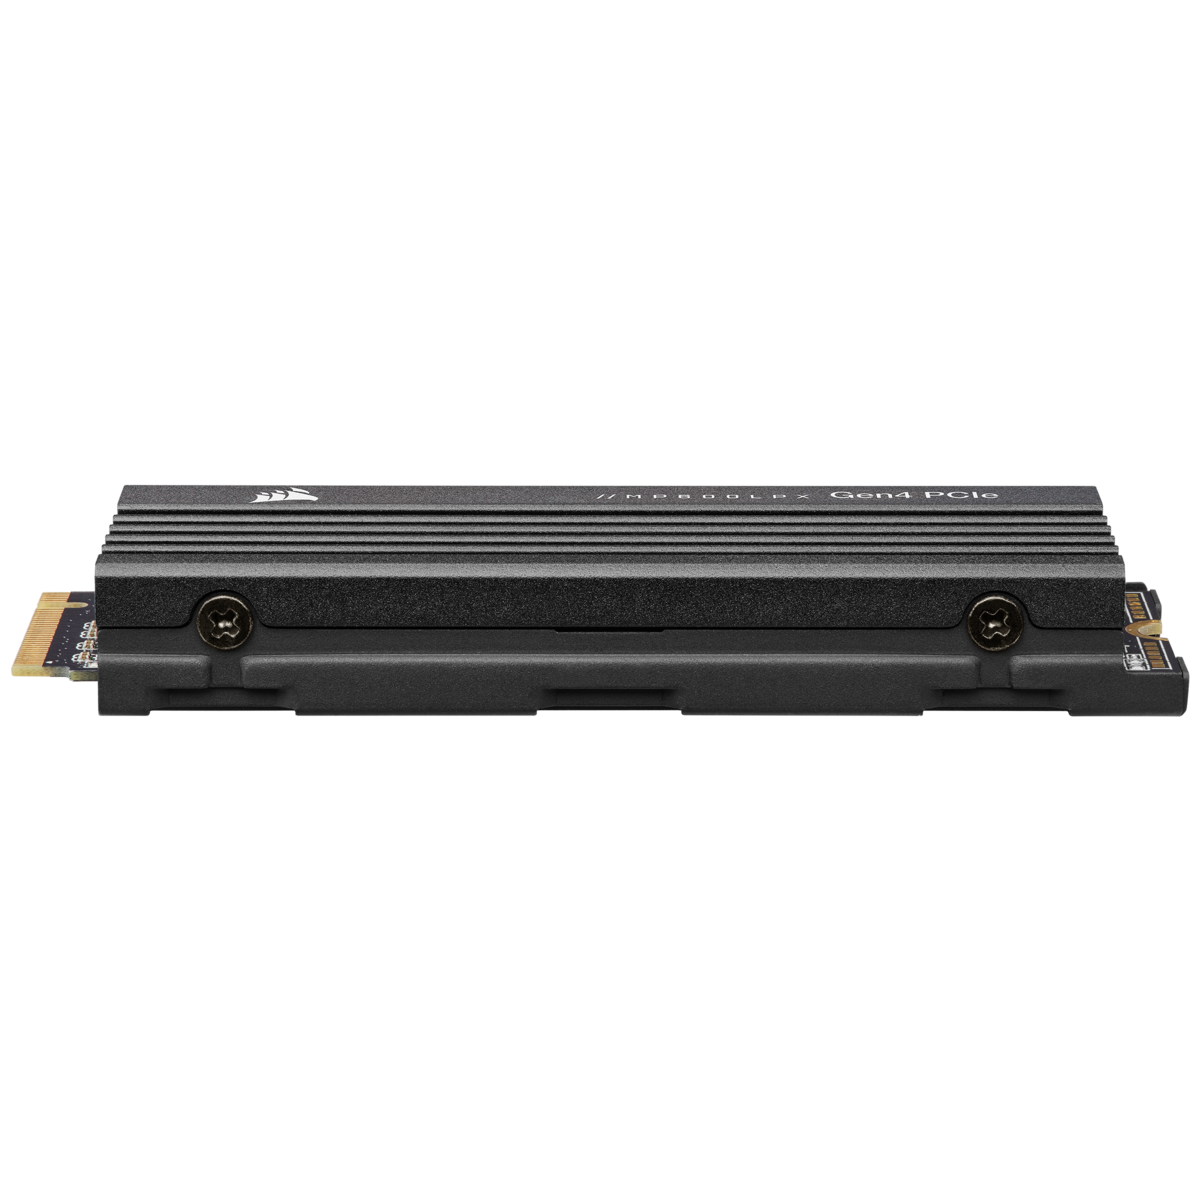 MP600 PRO LPX 1TB PCIe Gen4 x4 NVMe M.2 SSD - PS5* Compatible